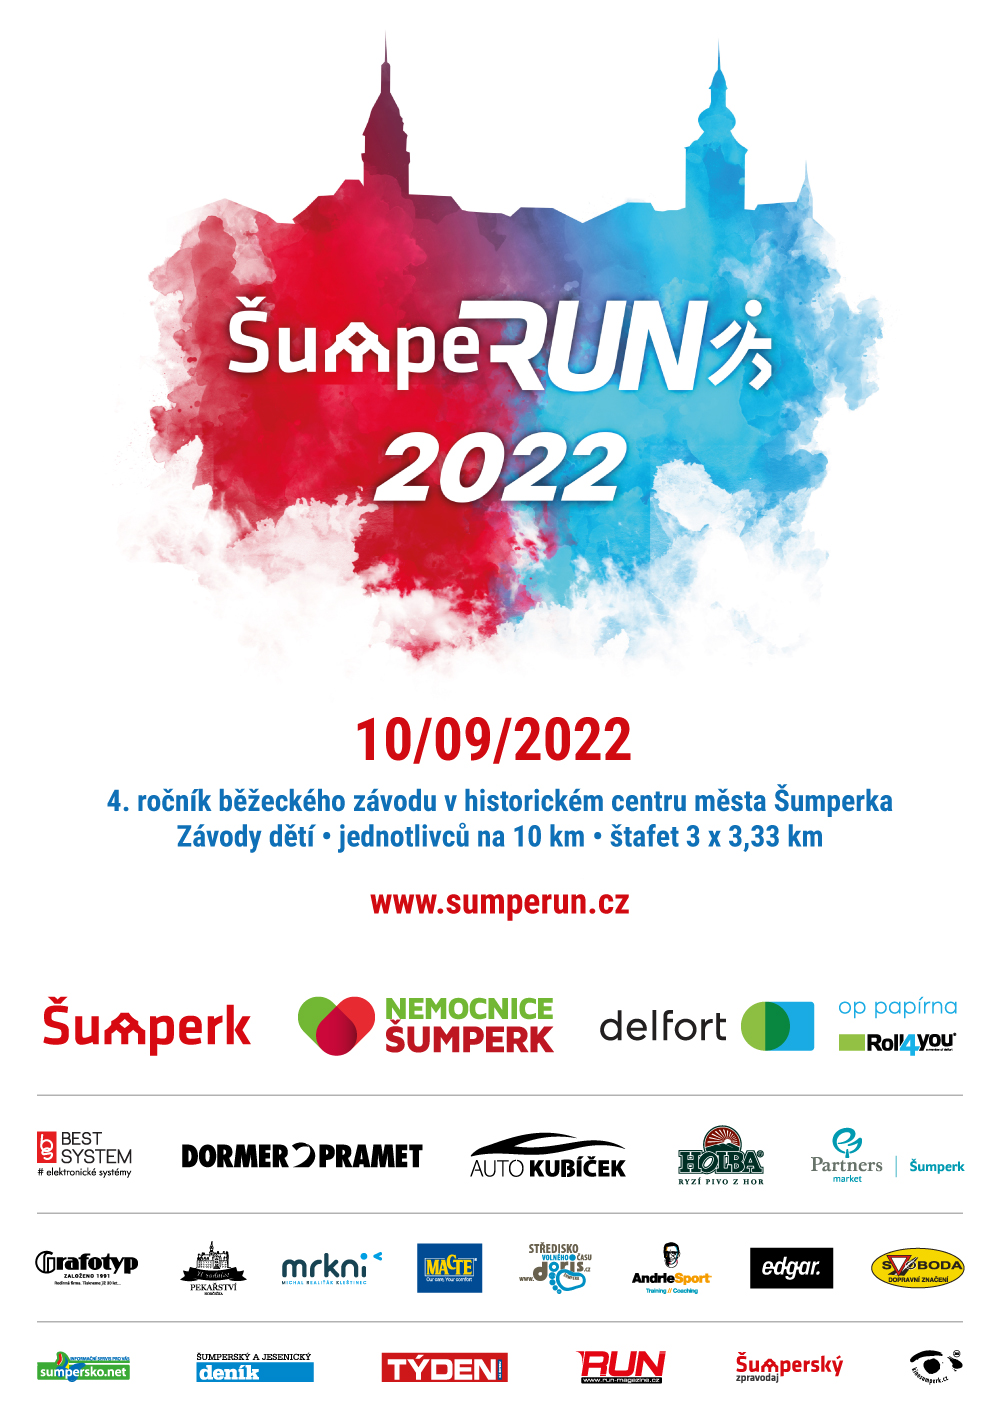 Čtvrtý ročník běžeckého závodu ŠumpeRUN